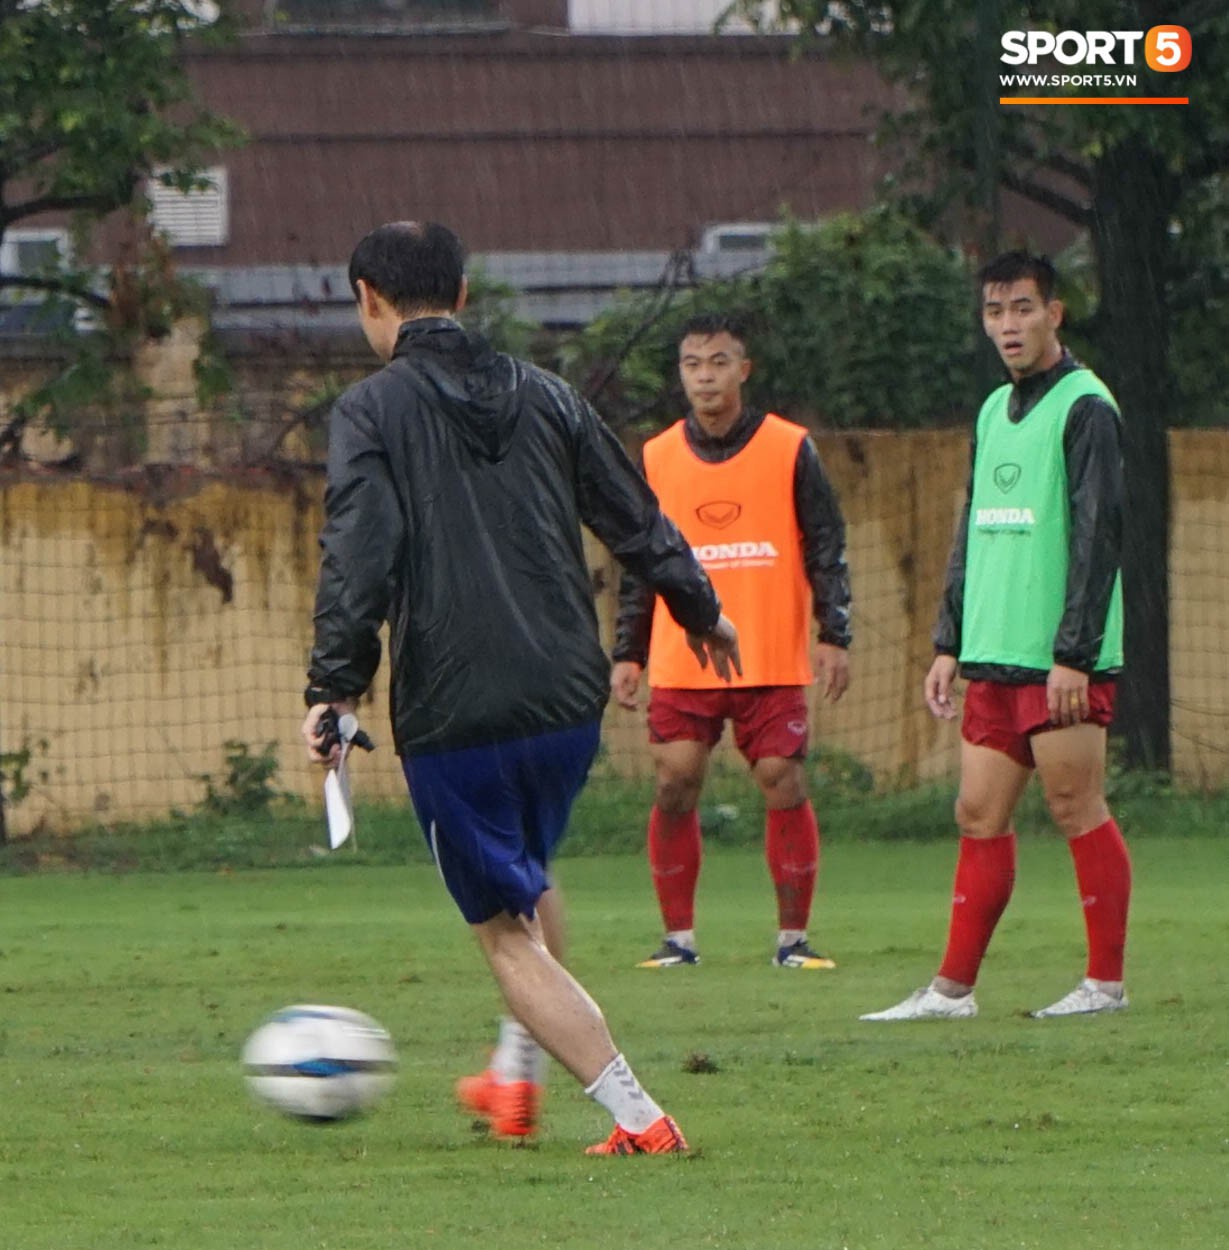 U23 Việt Nam tập luyện dưới trời mưa tầm tã trong ngày đầu làm việc với trợ lý mới thầy Park - Ảnh 4.